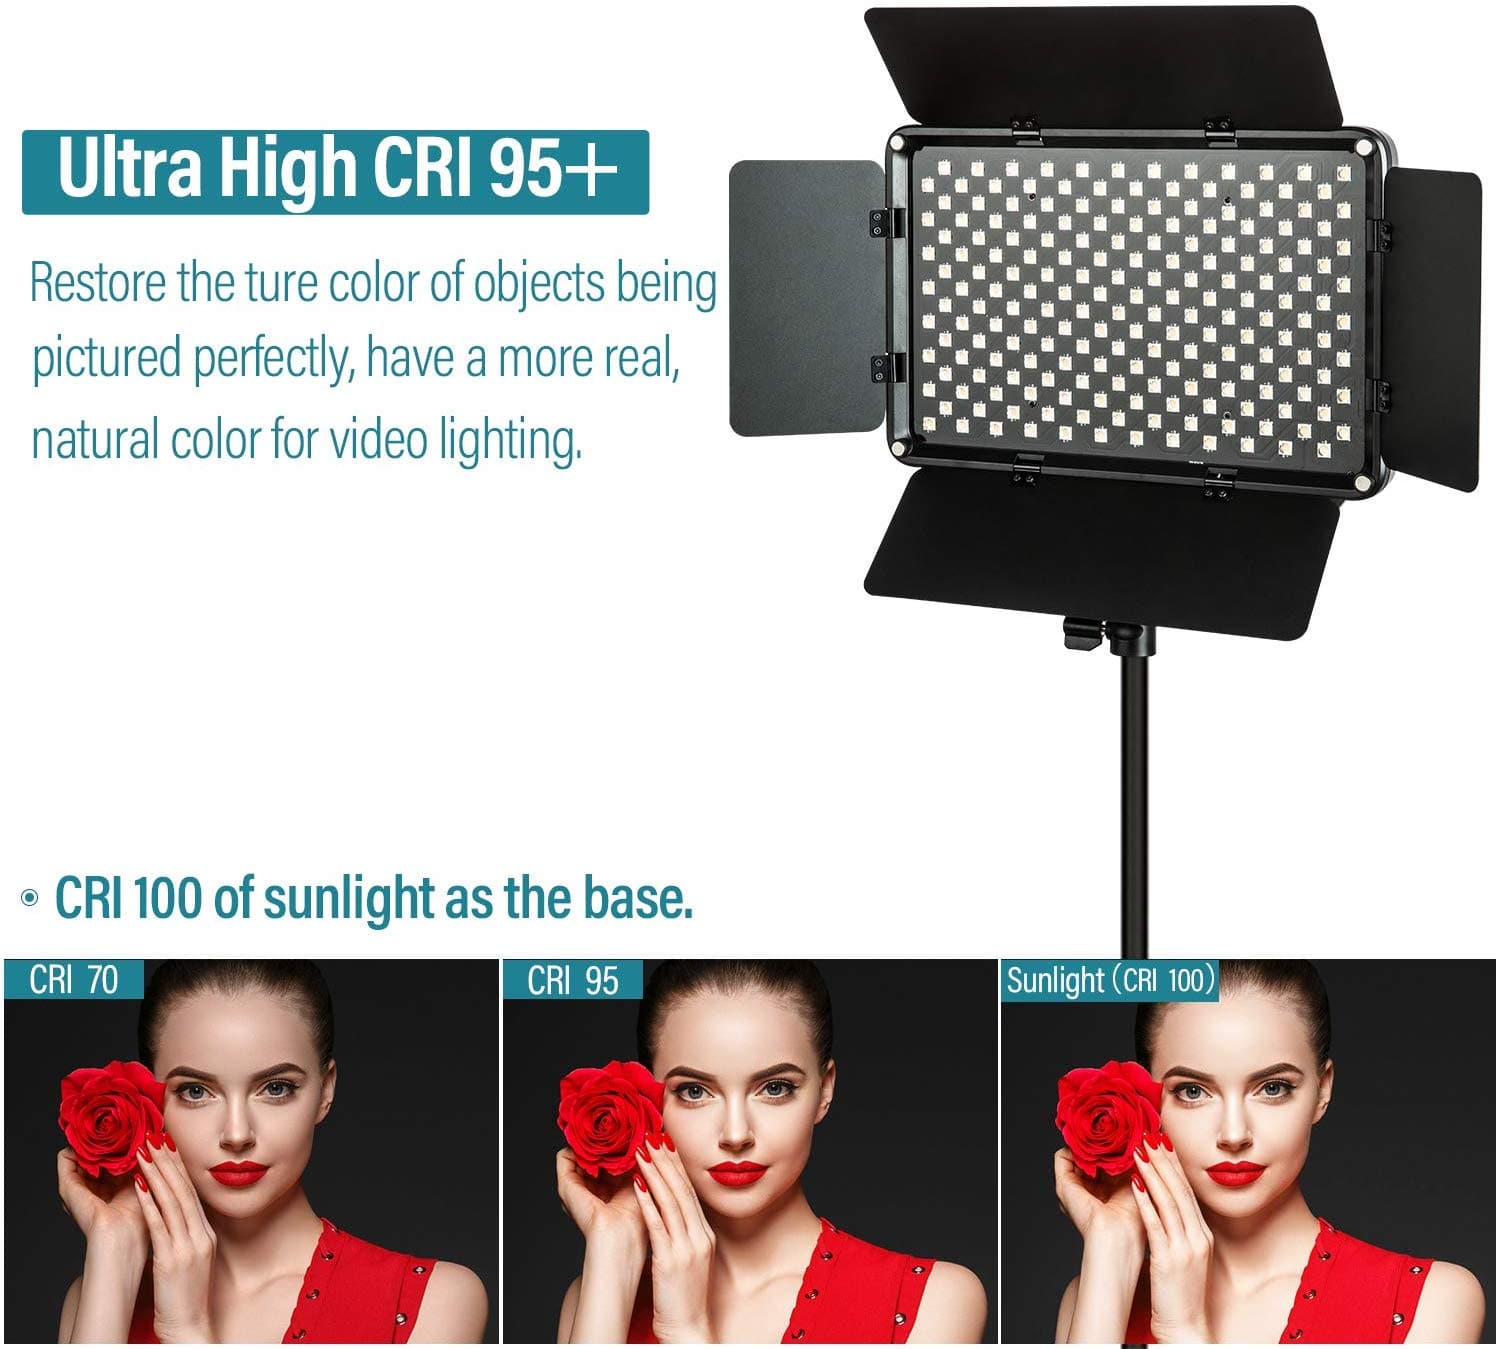 VILTROX VL-S192T Video LED Light 45W 3300K-5600K CRI 95+ (2-pack)